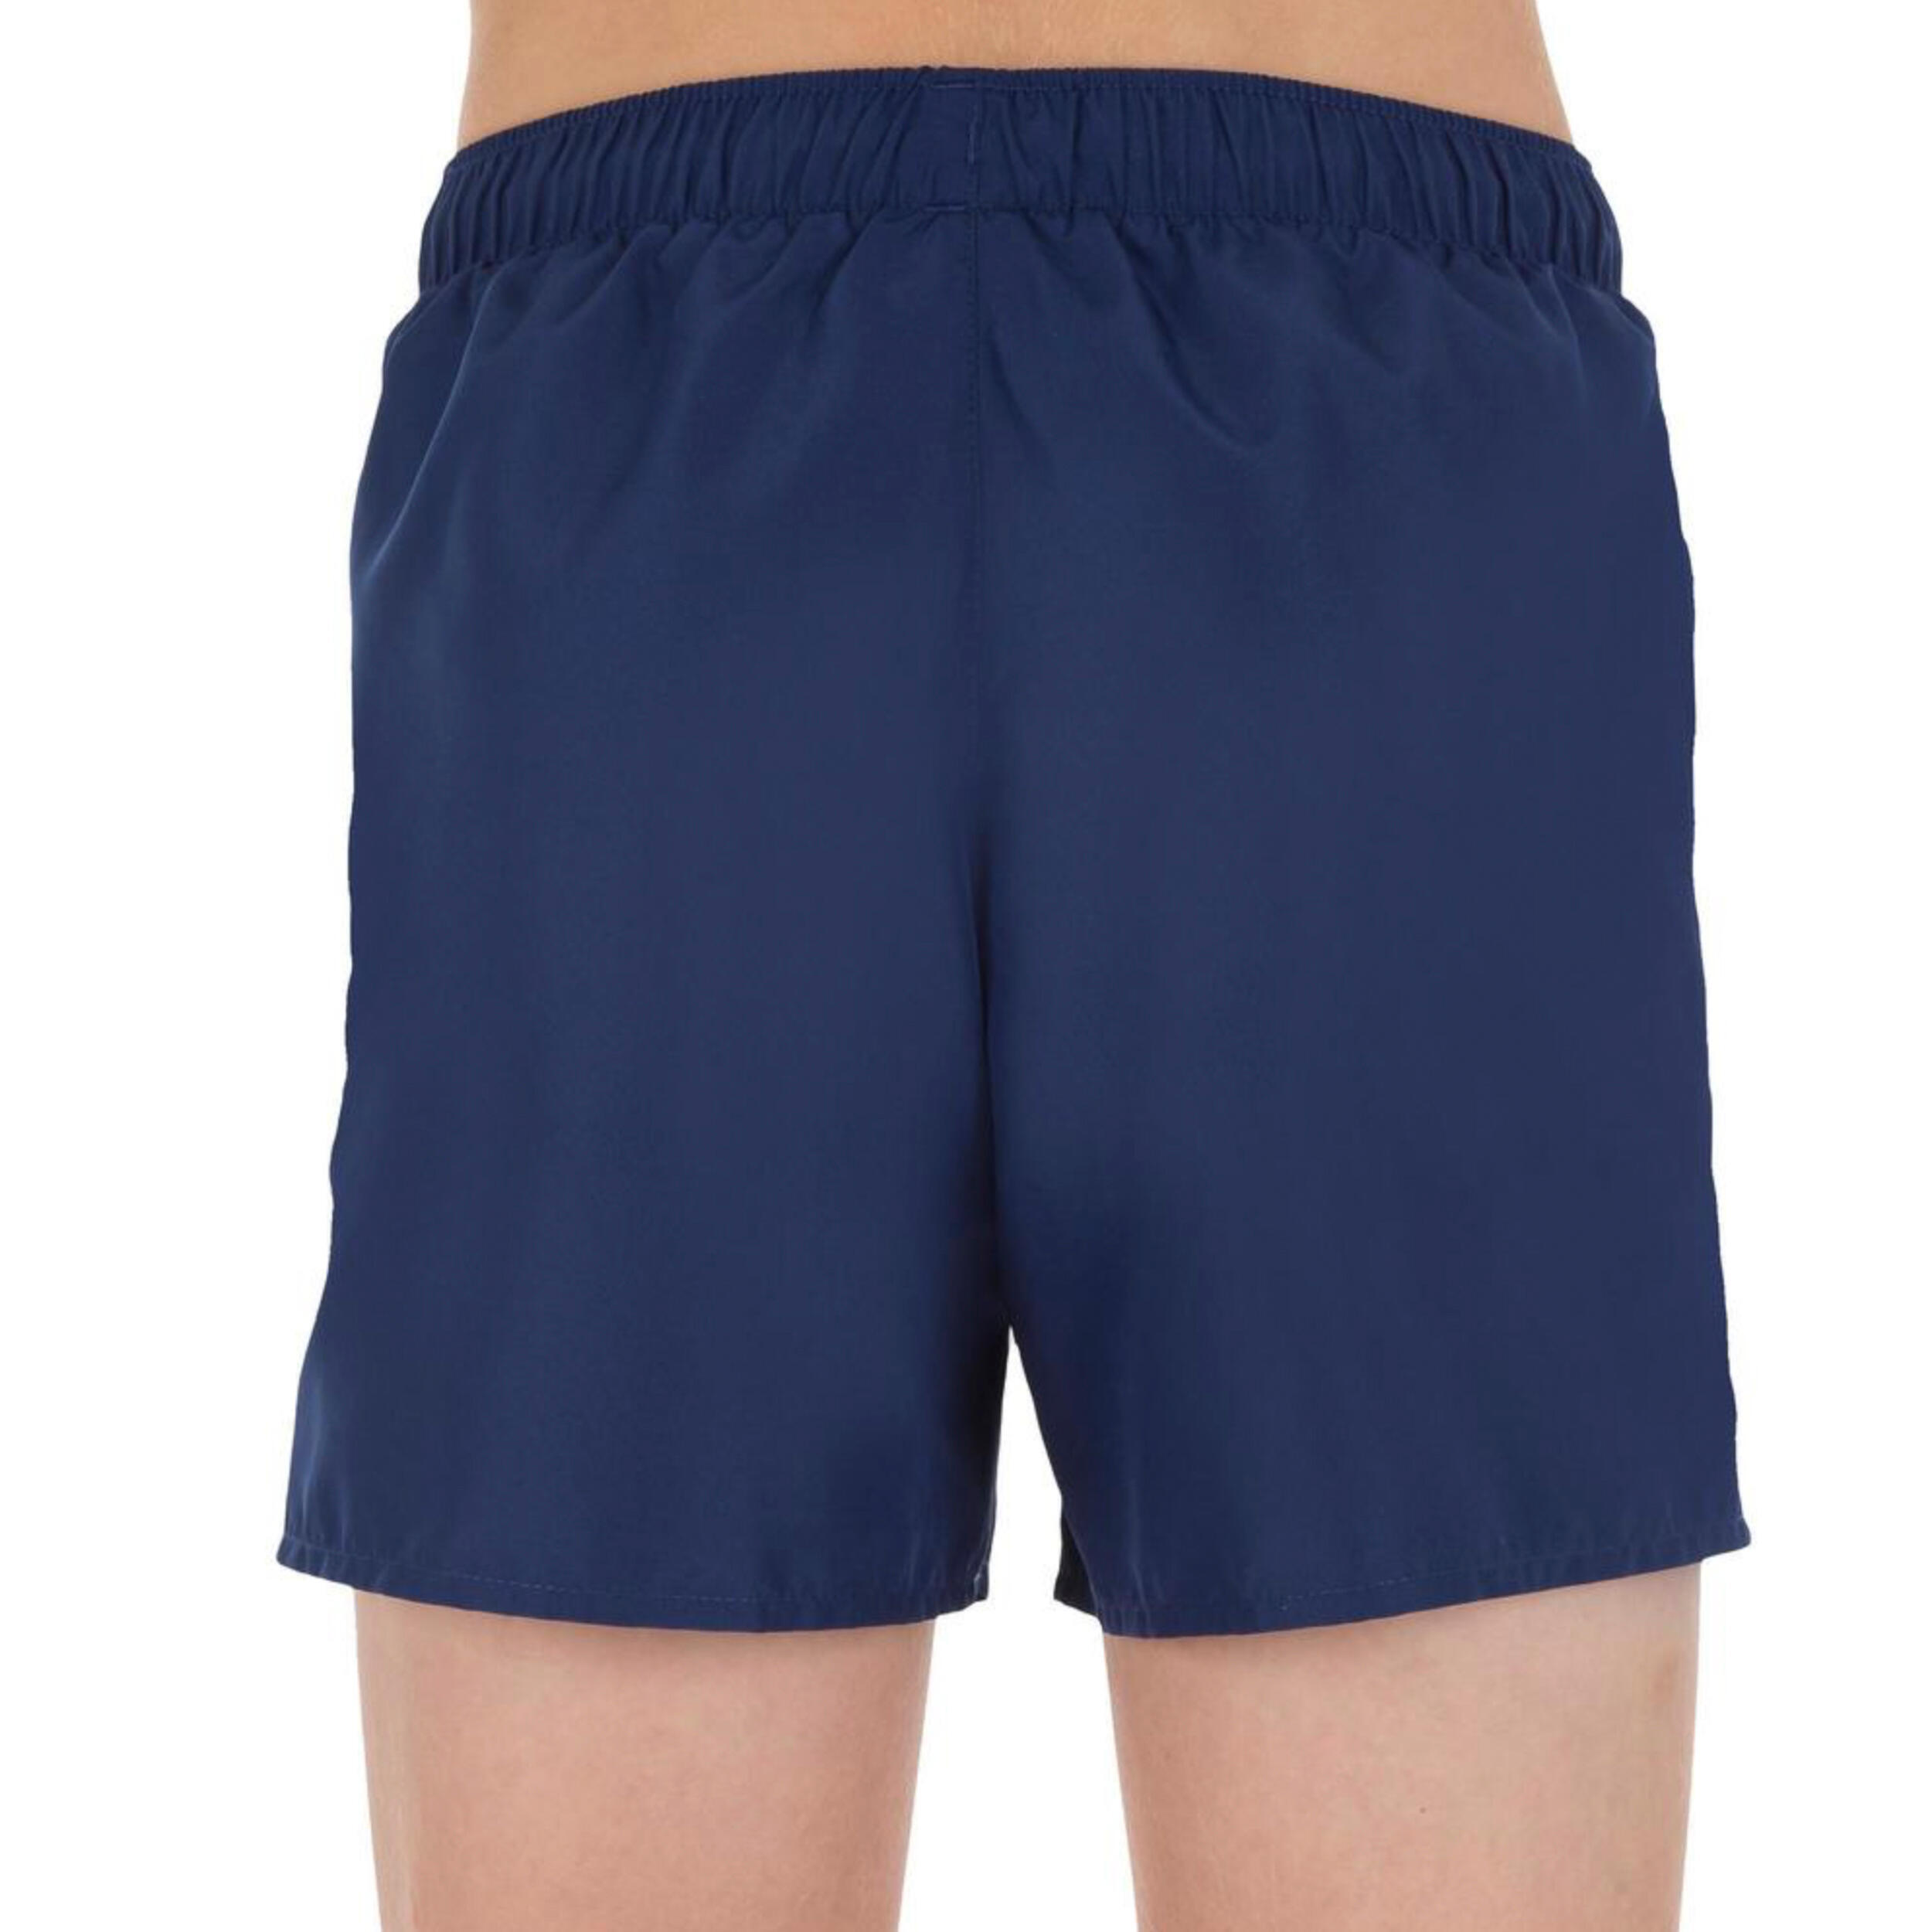 Swim Shorts - navy blue 4/7